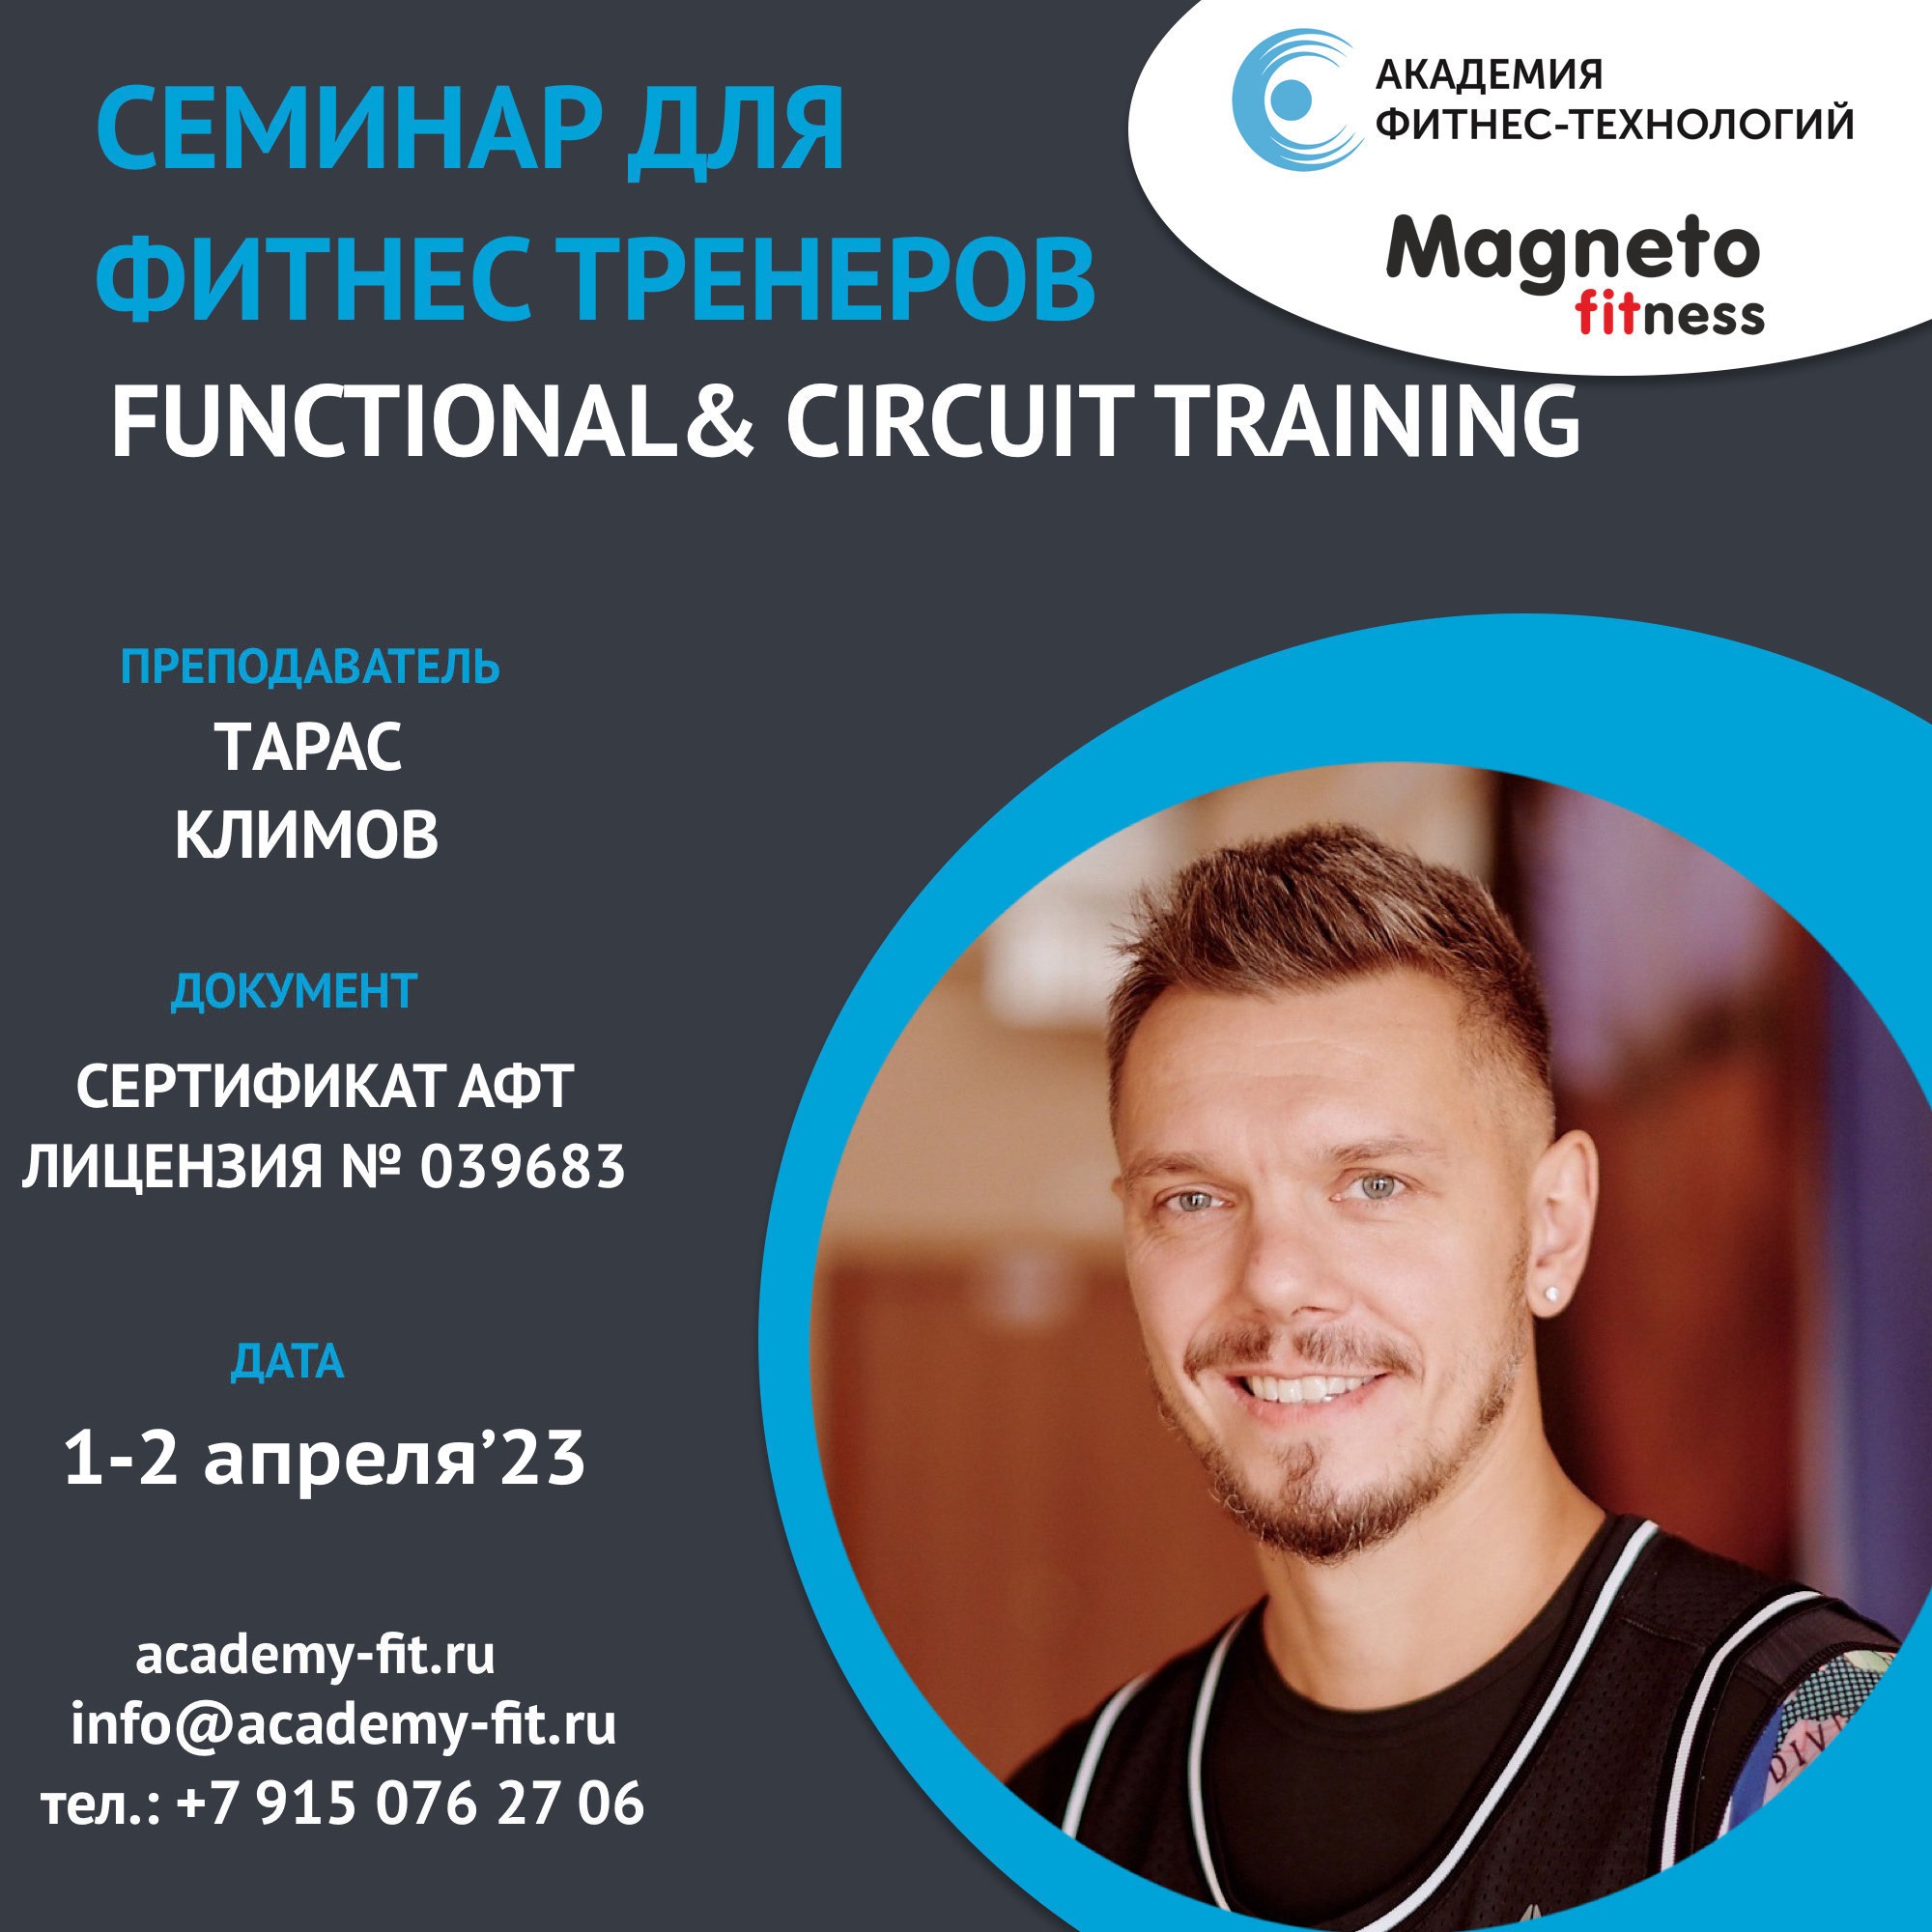 1-2 апреля практический семинар «Functional & Circuit Training» - Magneto Fitness Переделкино